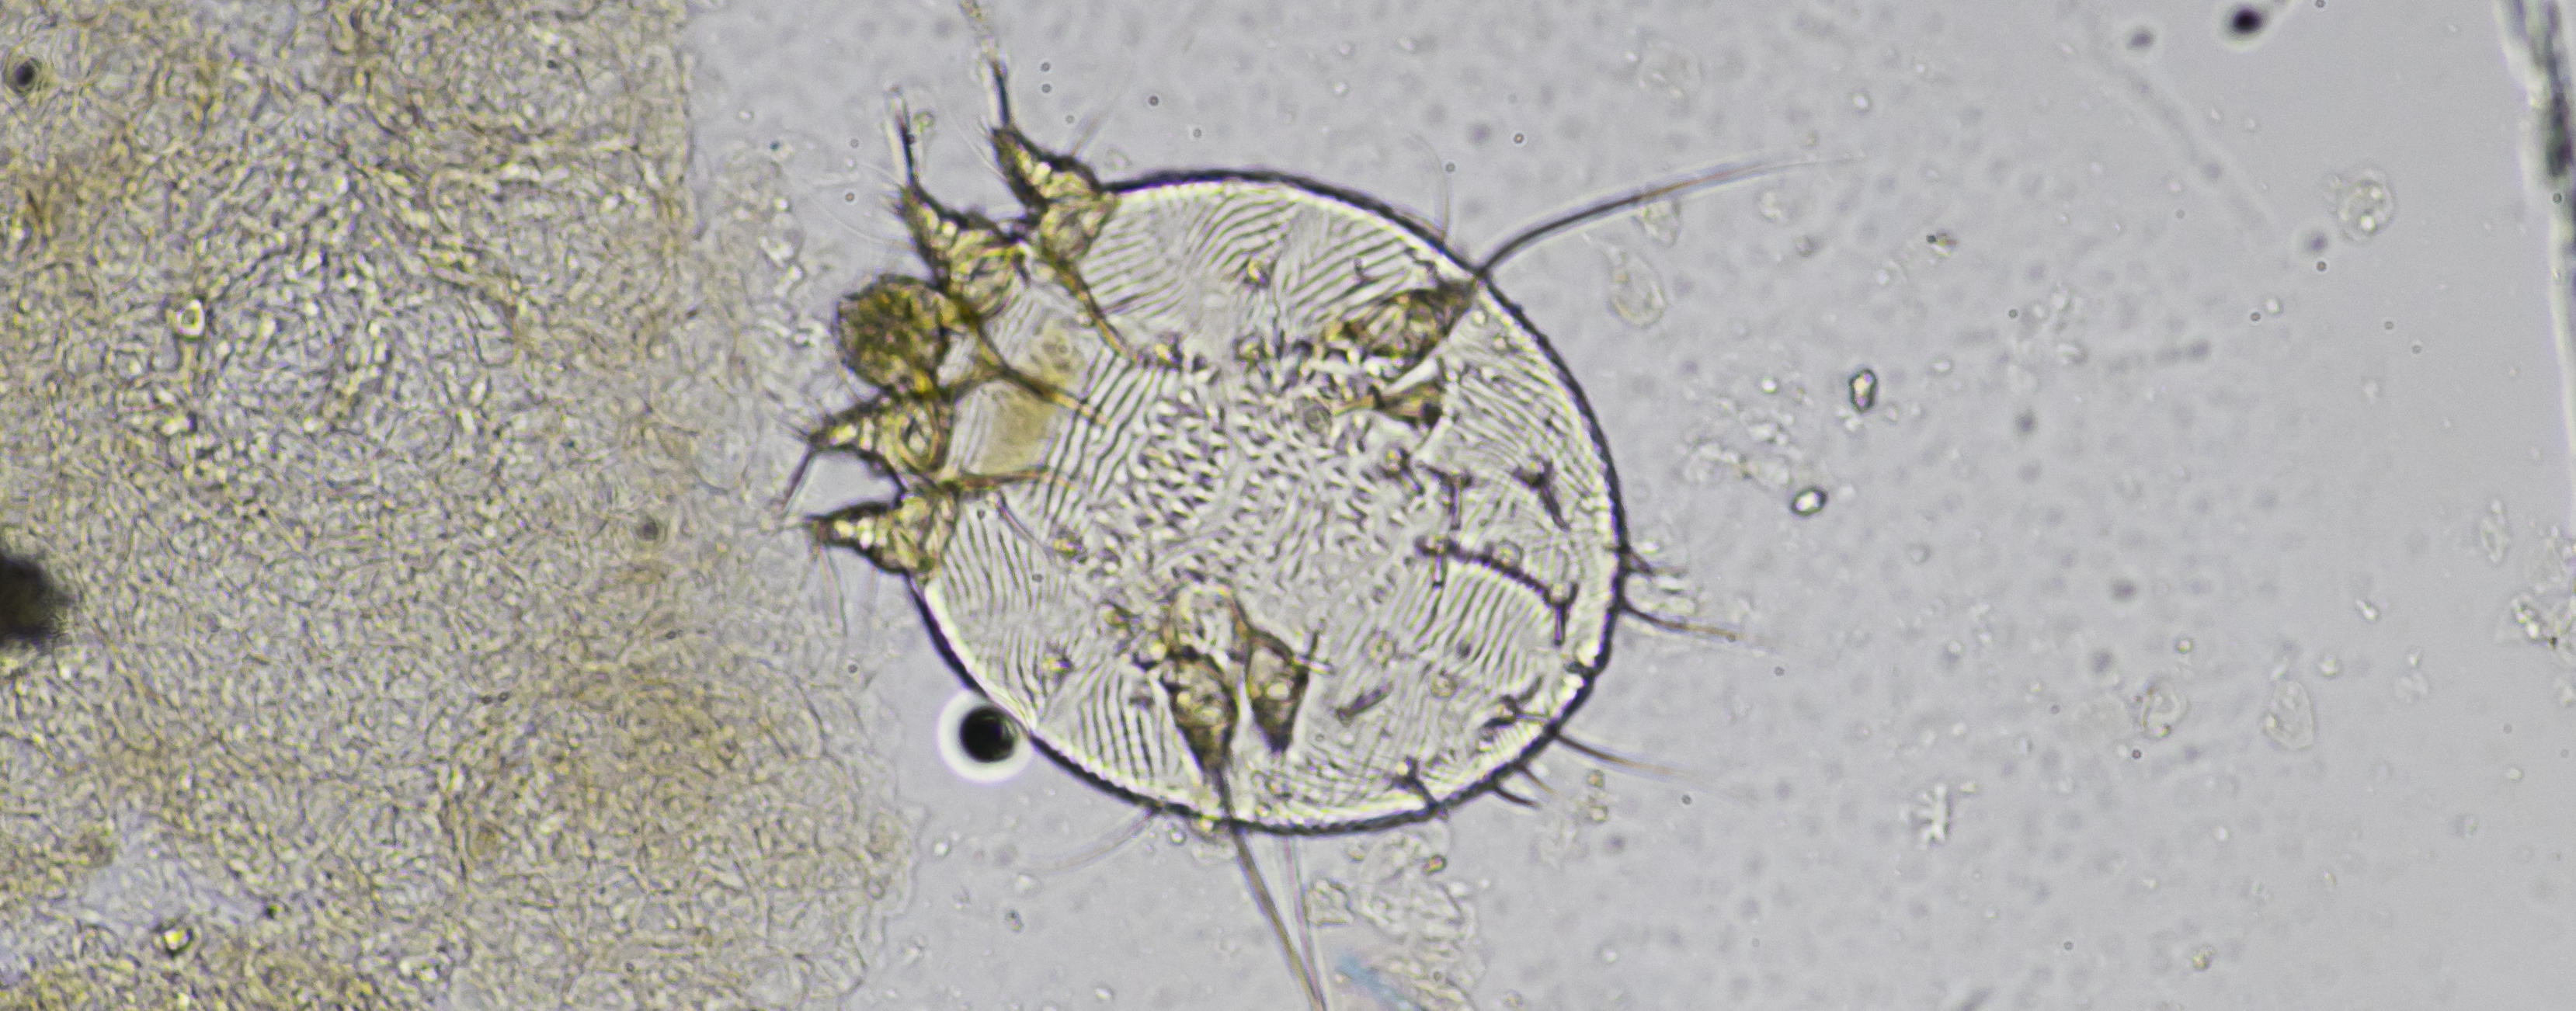 чесоточный клещ под микроскопом